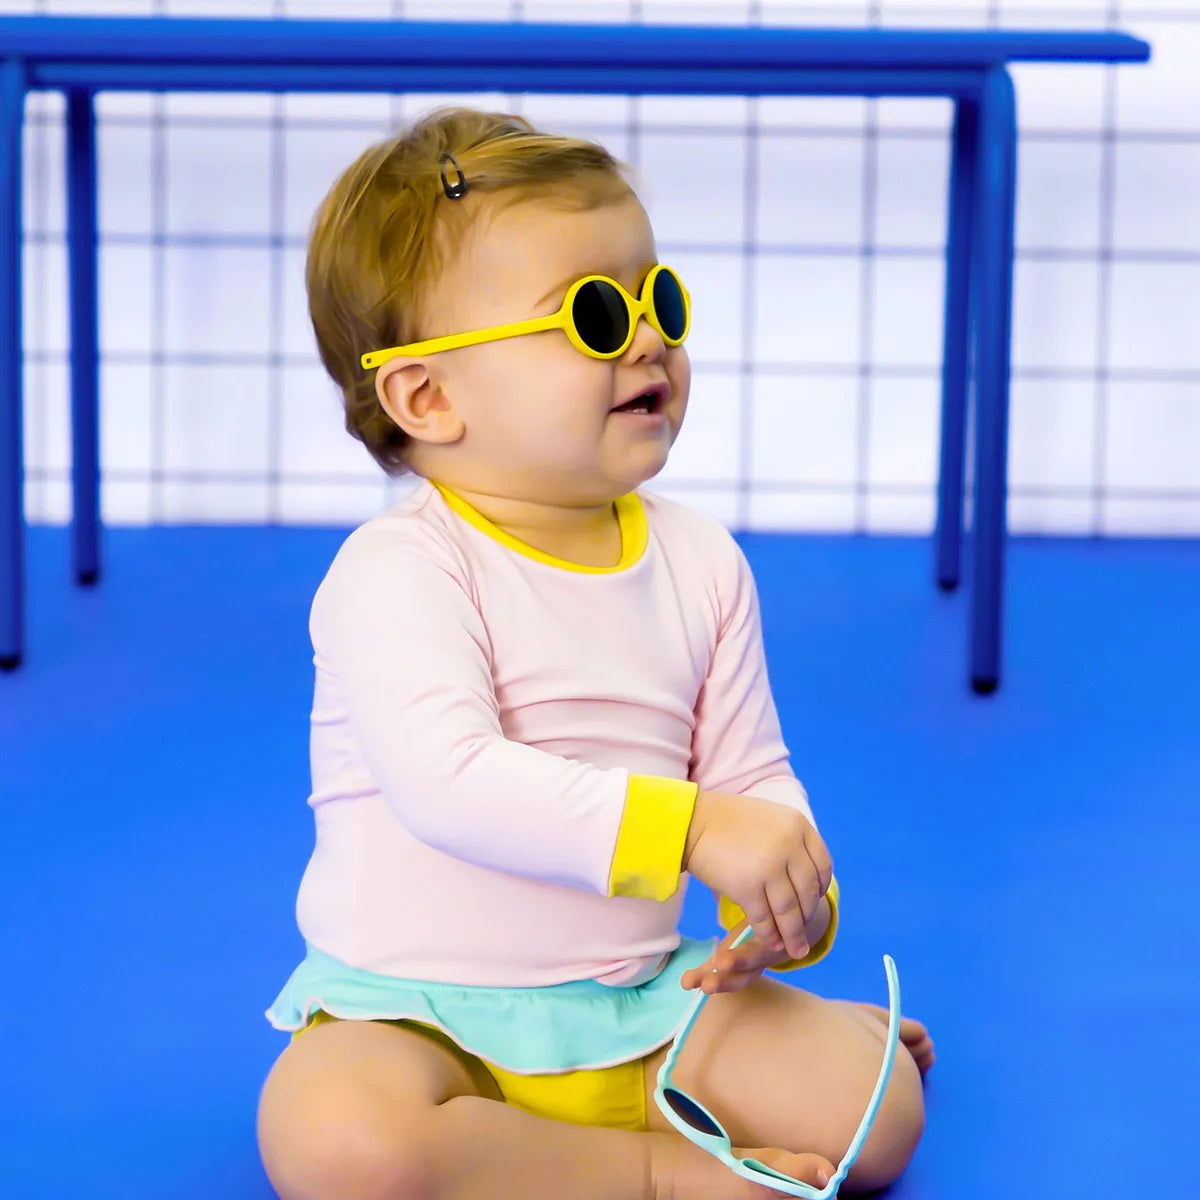 bébé avec lunette soleil diabola jaune